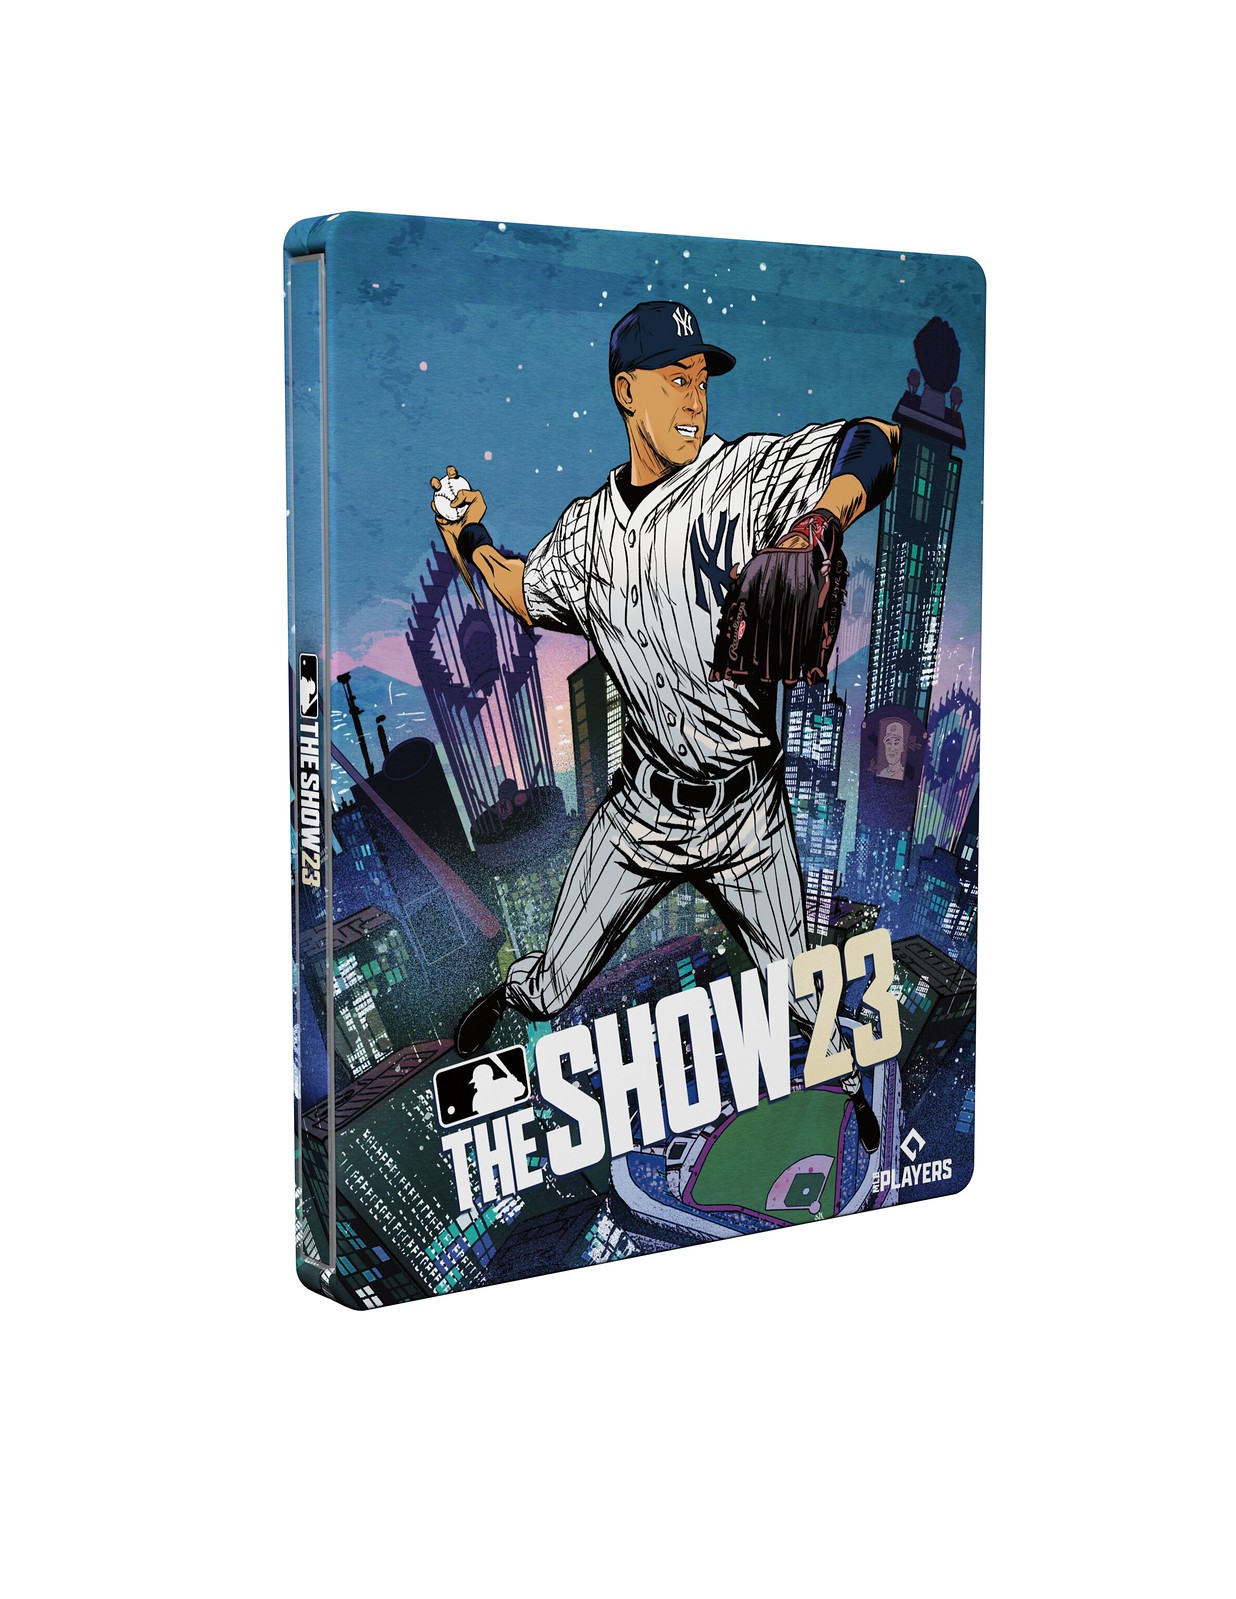 52662371715 babd3c695f h - Die Yankees-Legende Derek Jeter ist euer Cover-Sportler für die Collector‘s Edition von MLB The Show 23!